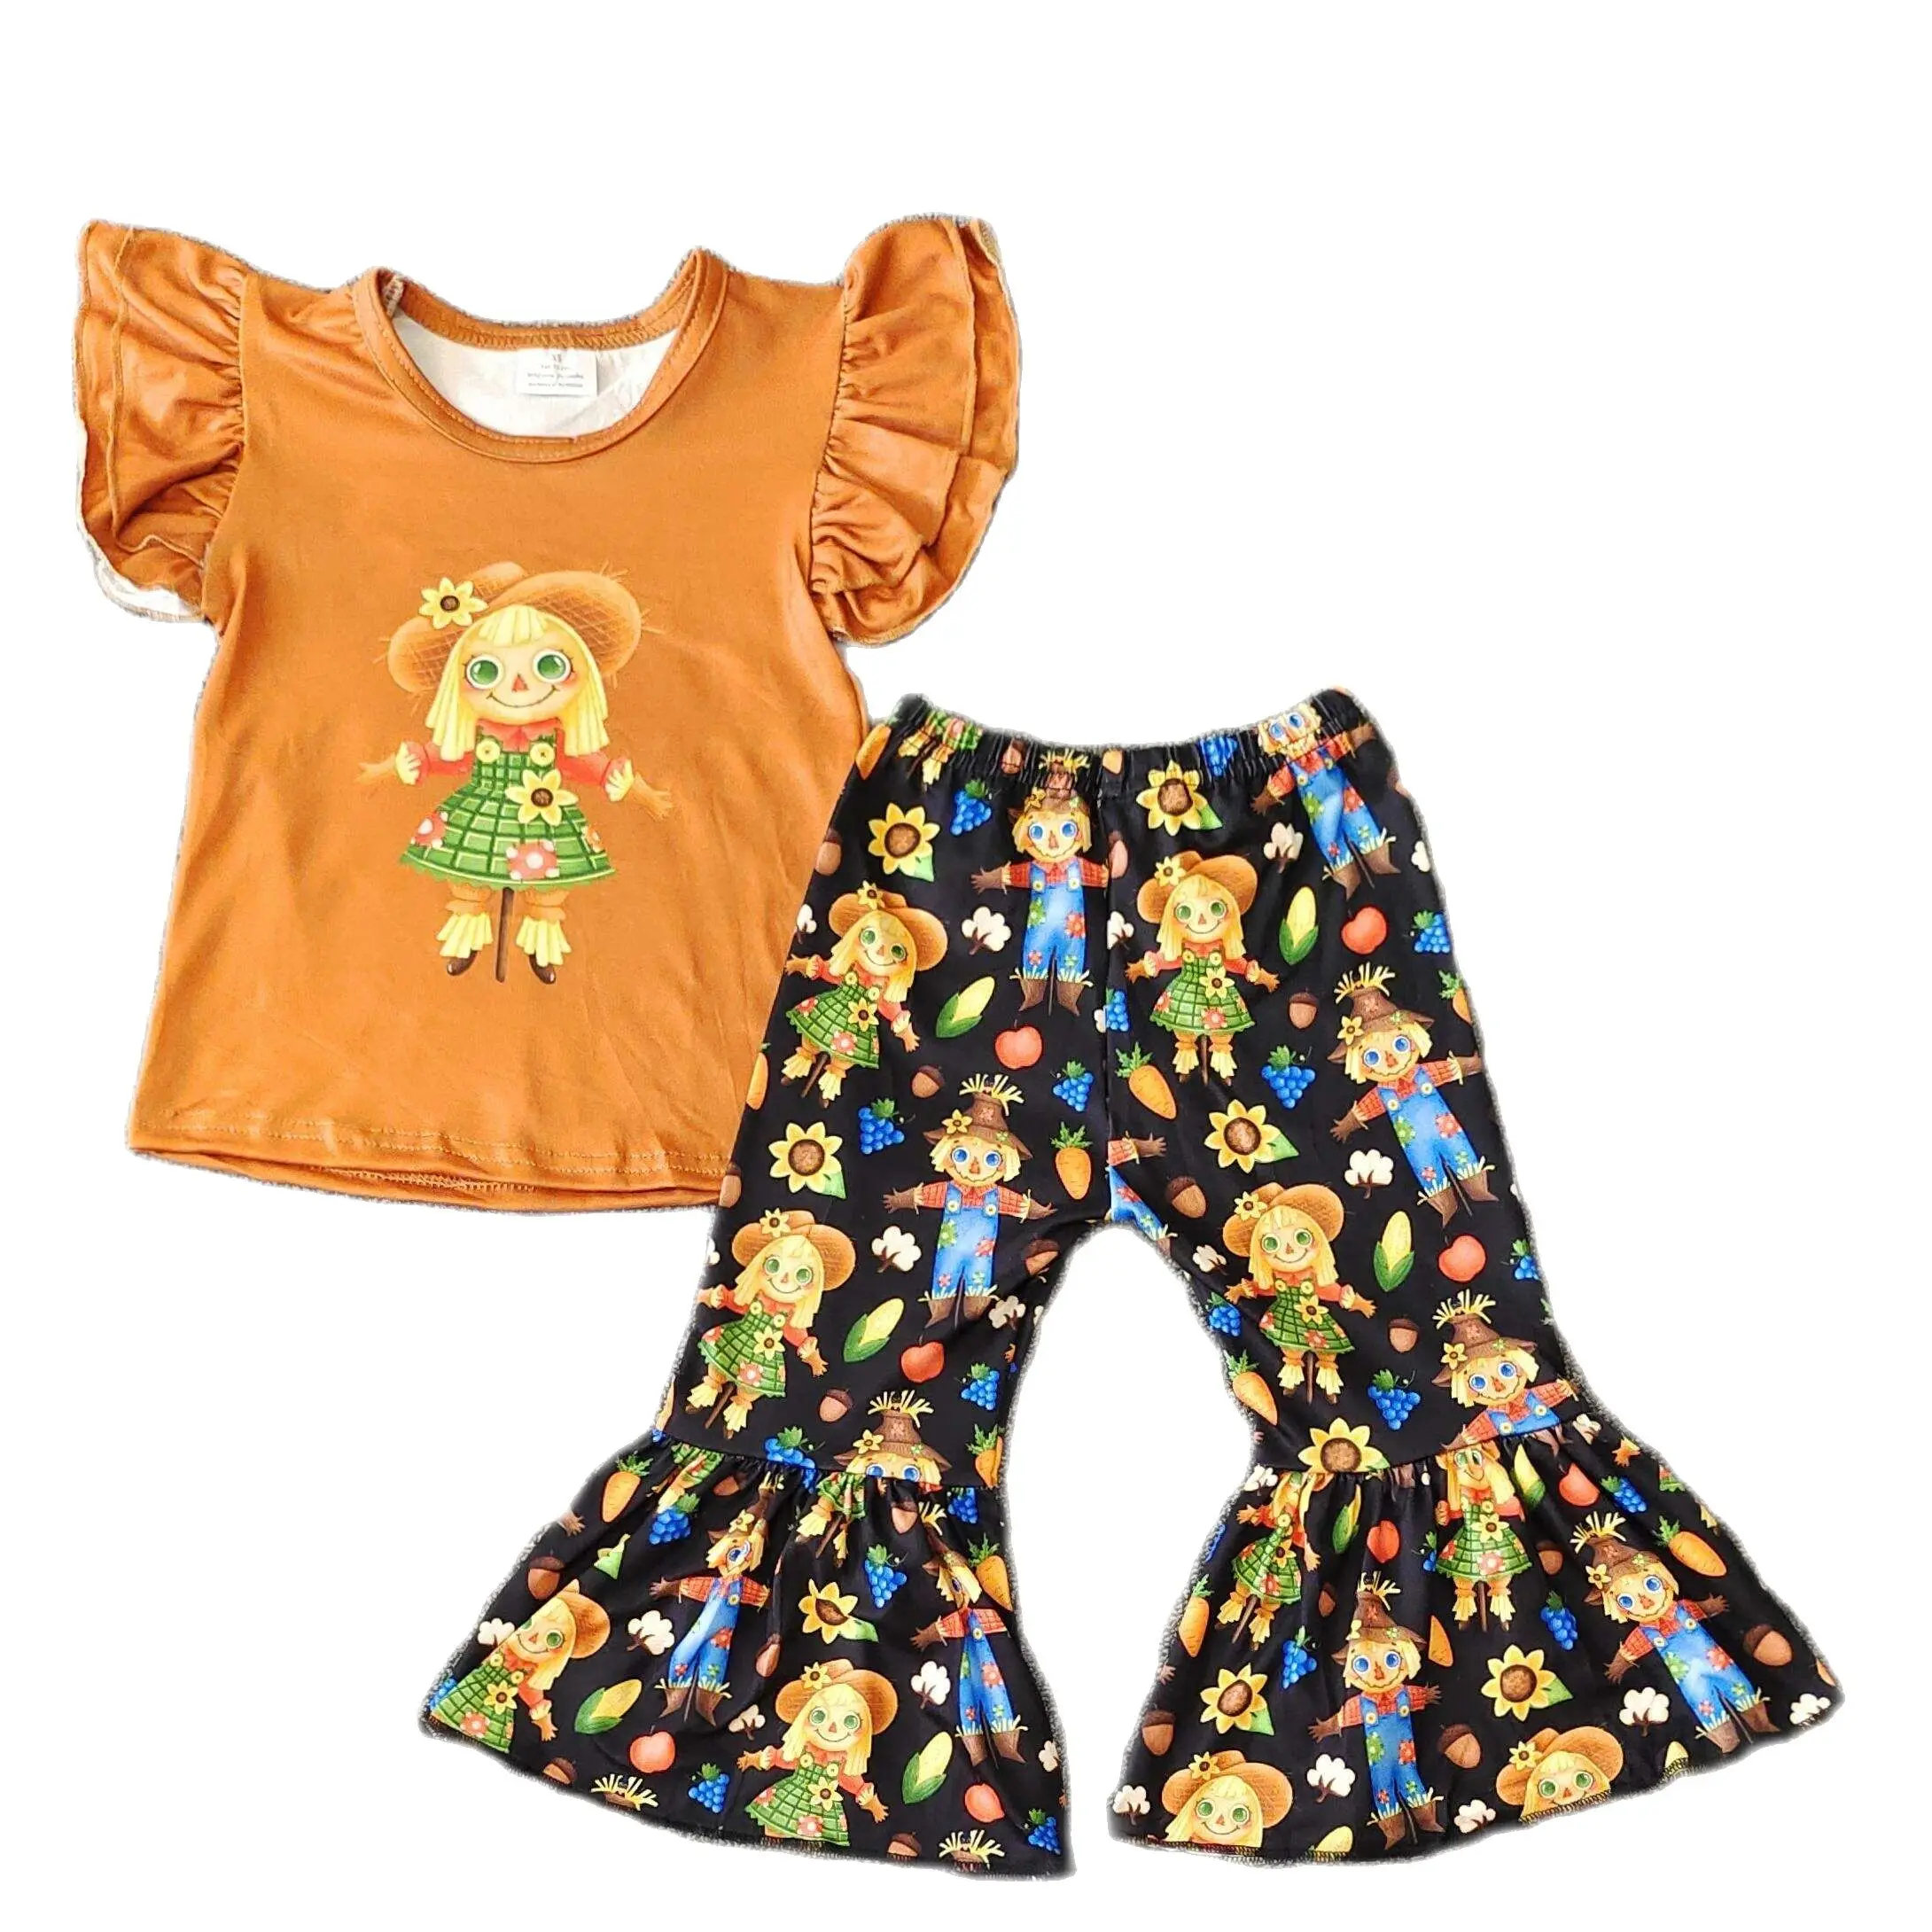 На едро годишният бутик, селска костюм за момичета, оранжево топ с принтом боги, разкроена панталони, комплект сладък детски дрехи